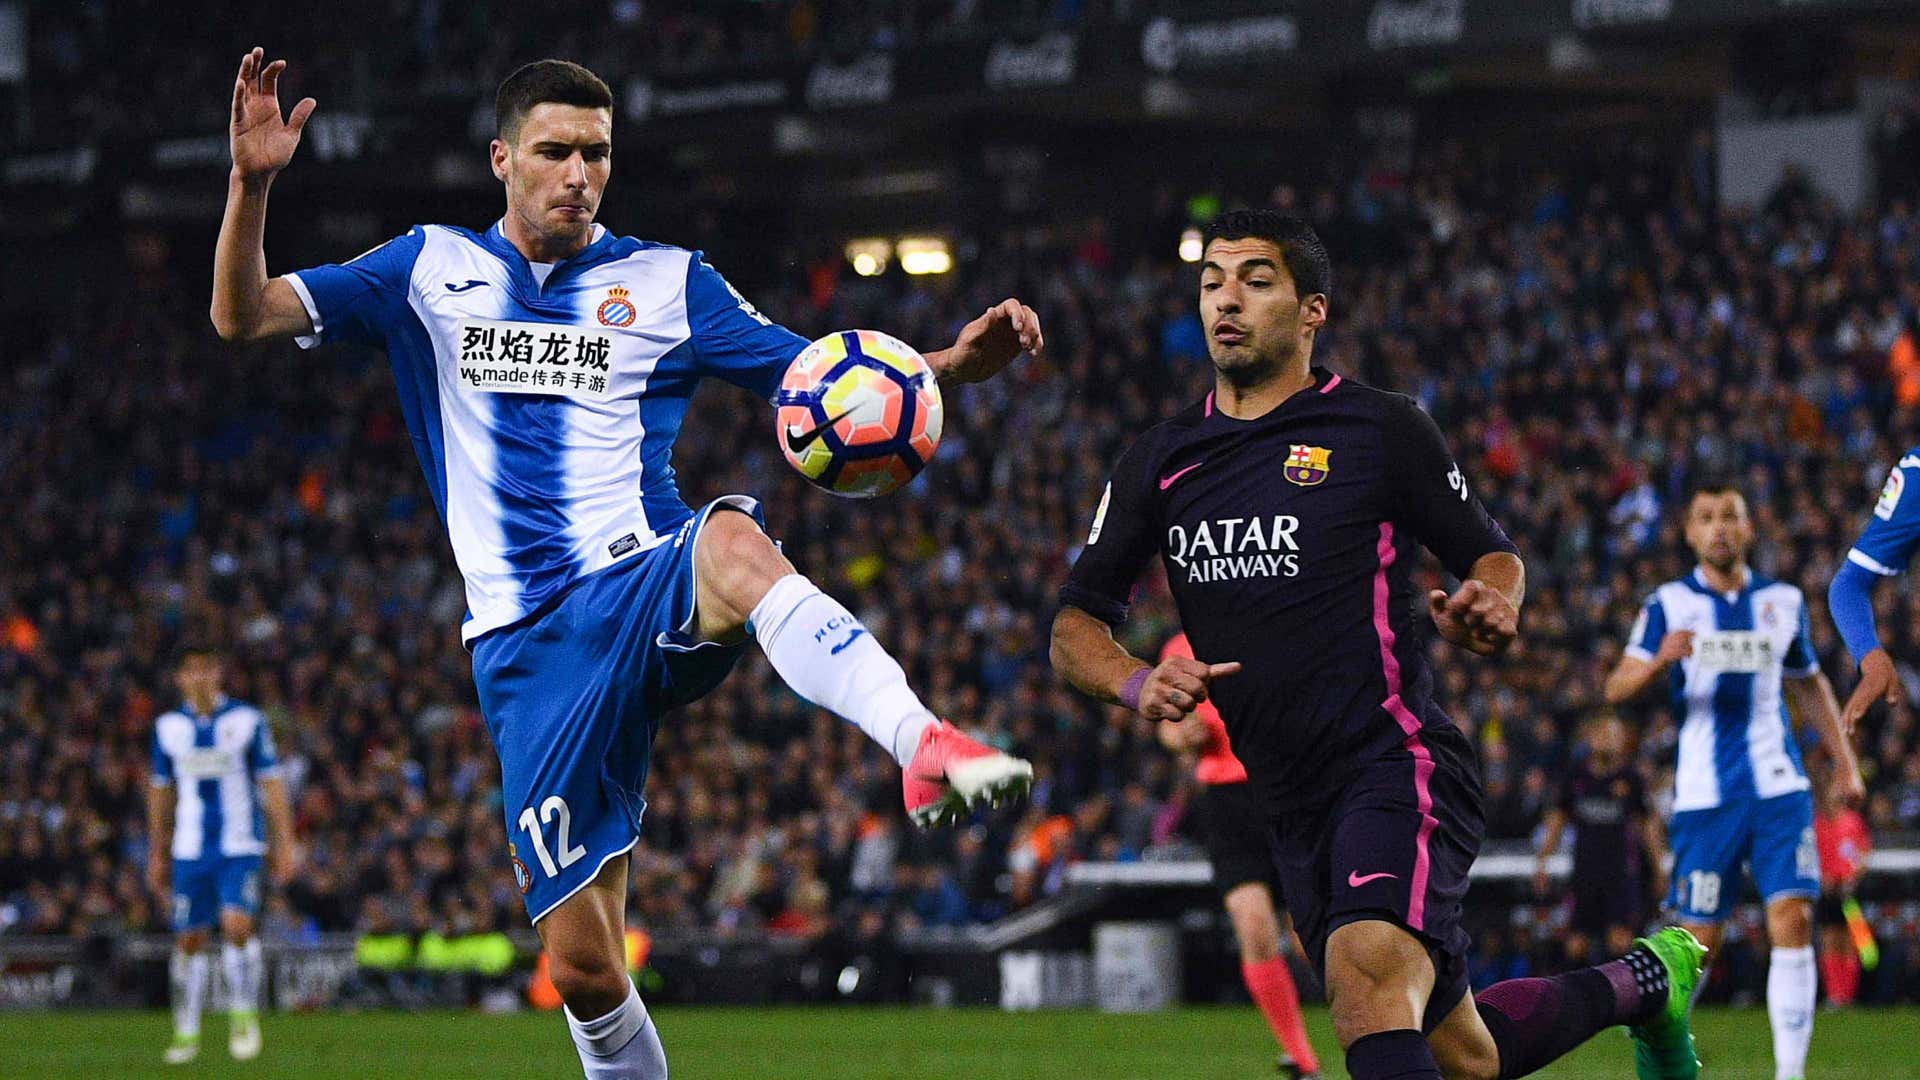 Barcelona - Espanyol, Sporting - y los derbis más atractivos | Goal.com